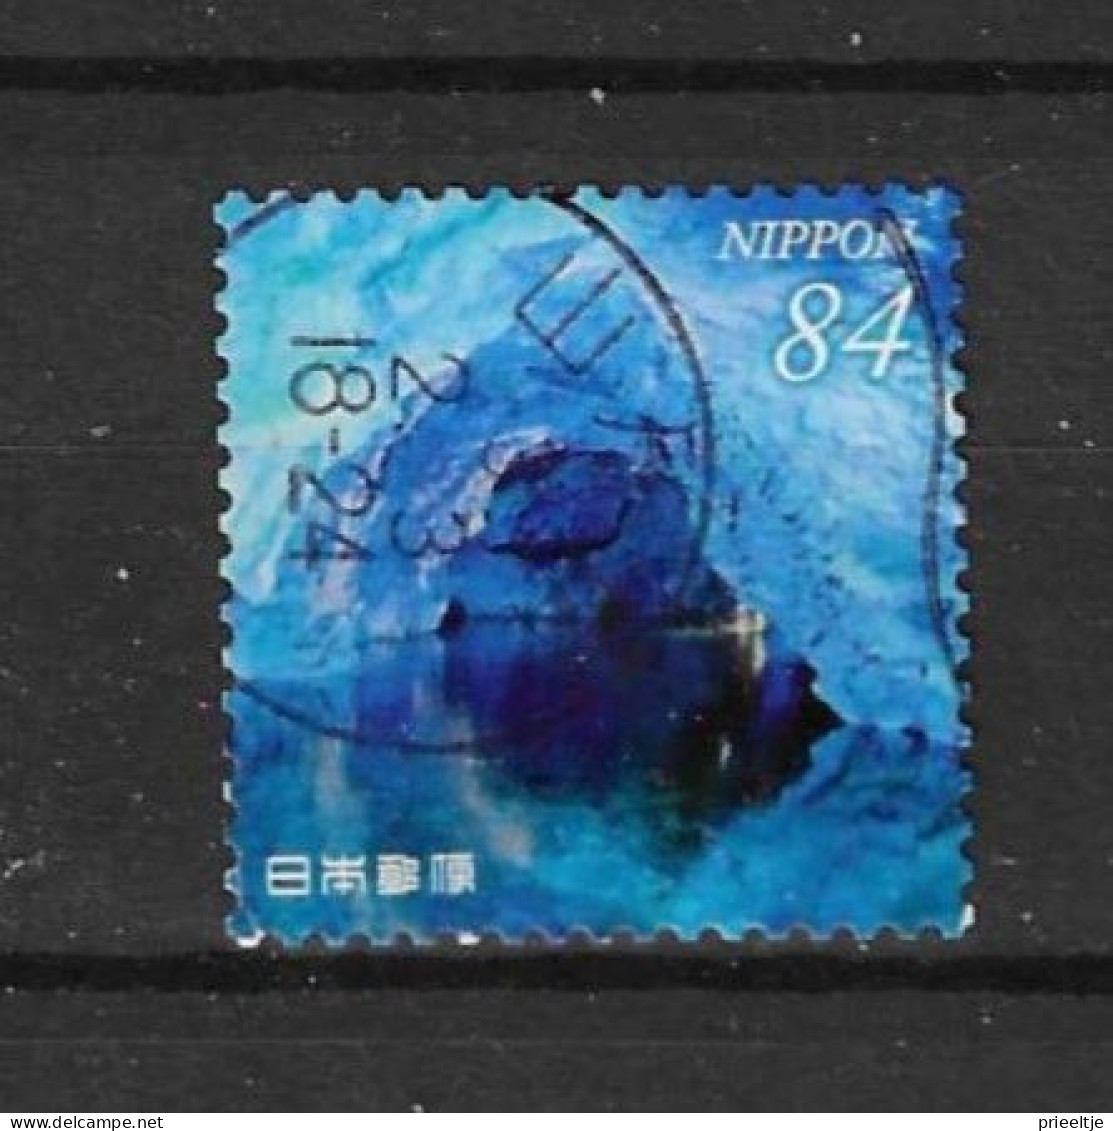 Japan 2021 Landscapes Y.T. 10309 (0) - Used Stamps